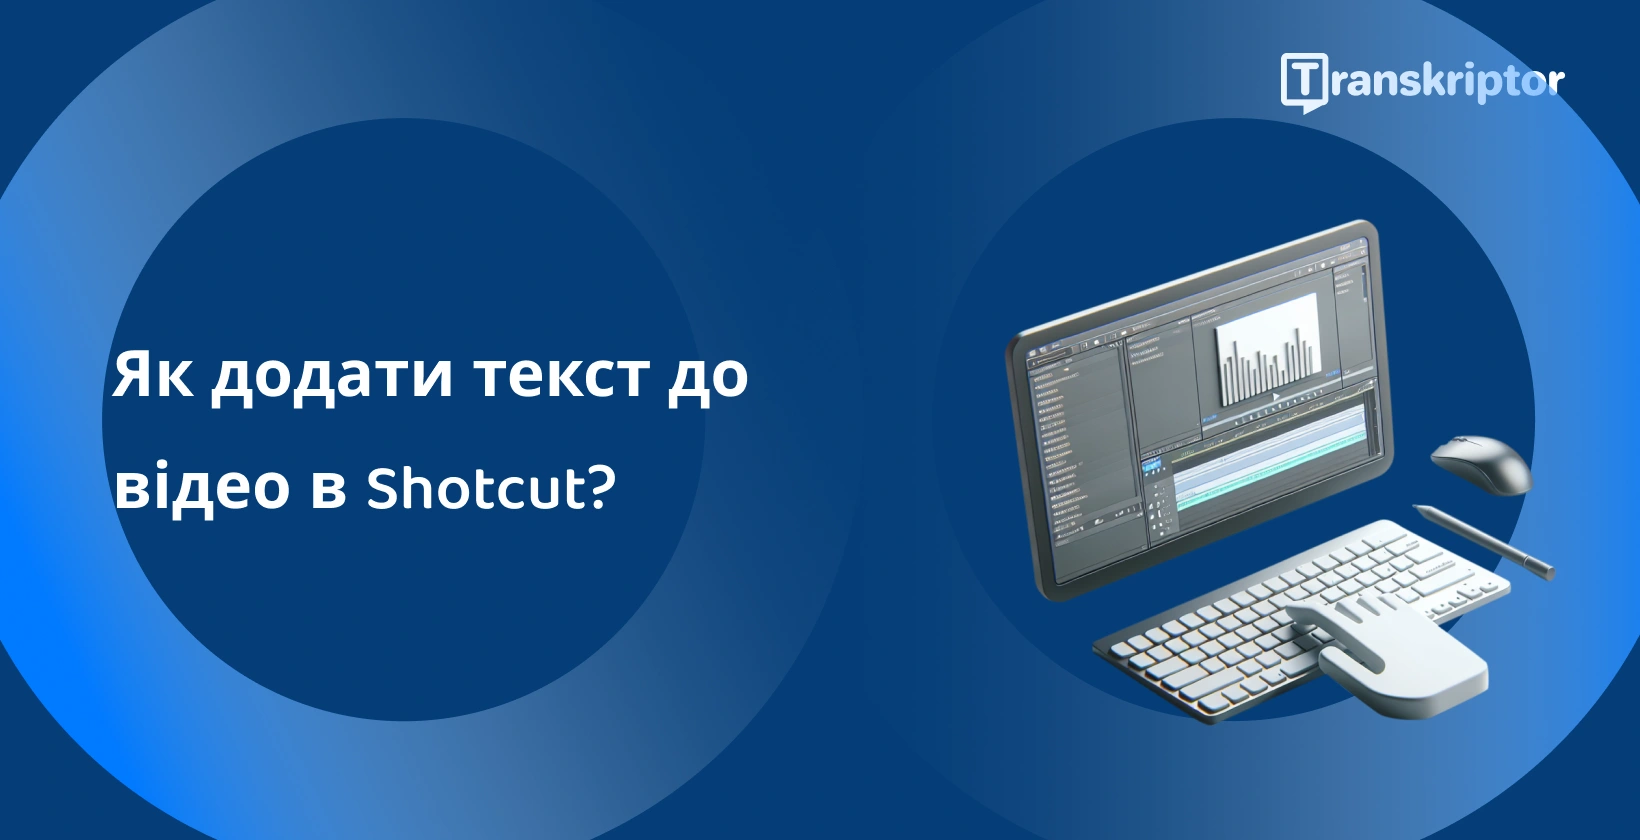 Shotcut програмне забезпечення для редагування відео на моніторі за допомогою осцилограм і текстових інструментів для додавання підписів і заголовків до відео.